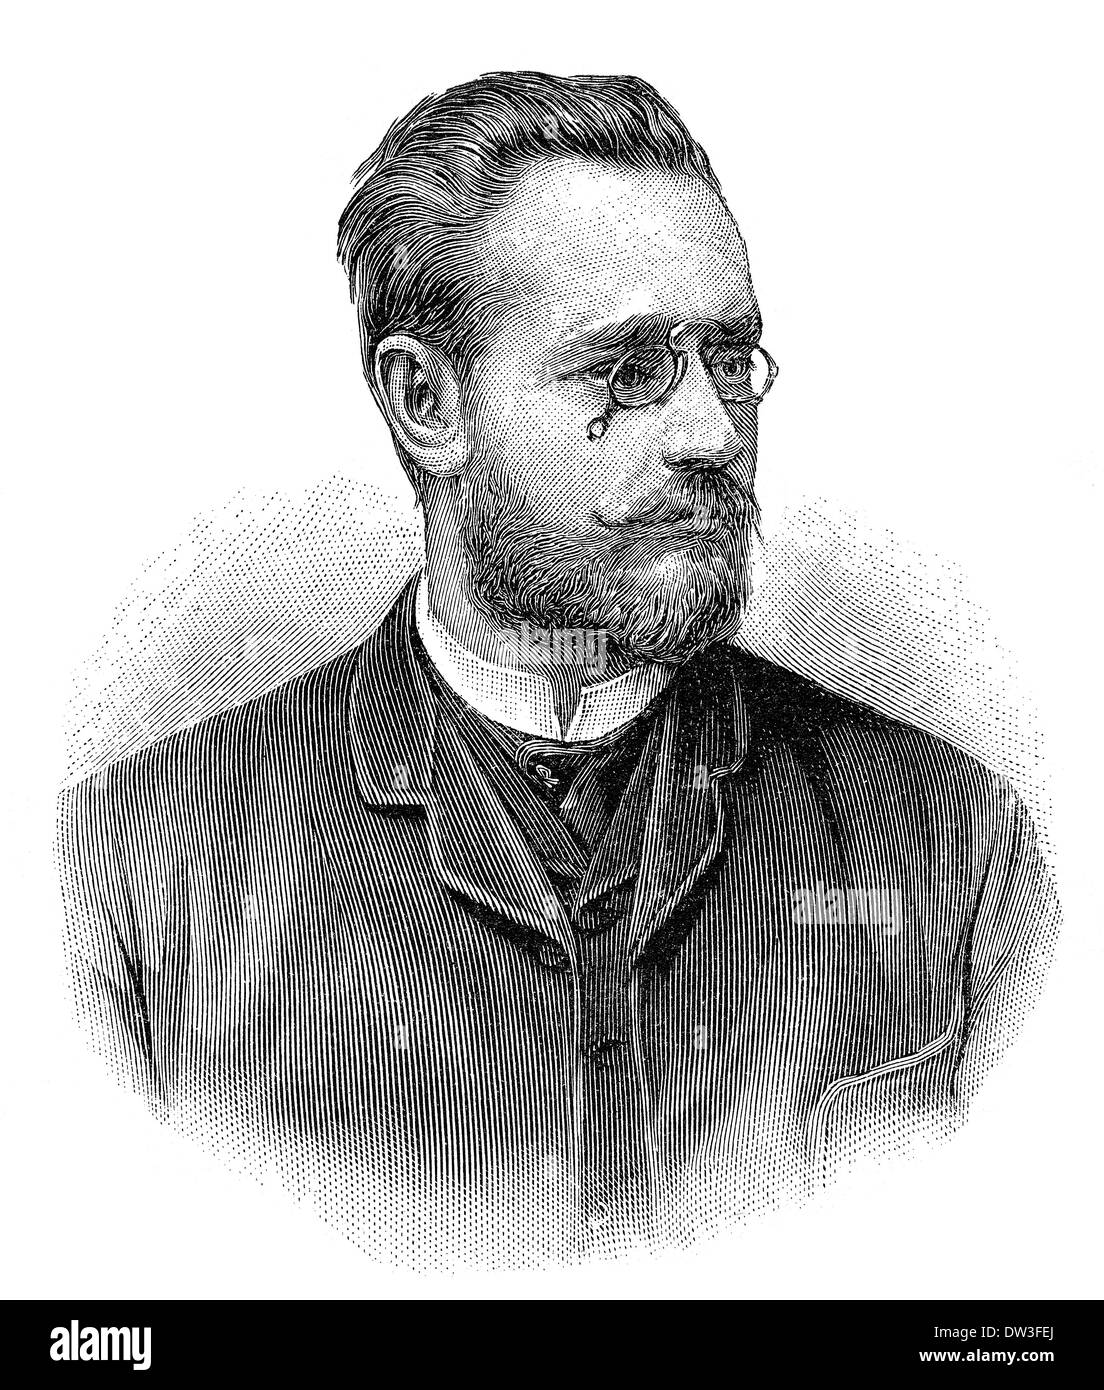 Carl Auer Freiherr von Welsbach, 1858 - 1929, an Austrian scientist and inventor, Stock Photo